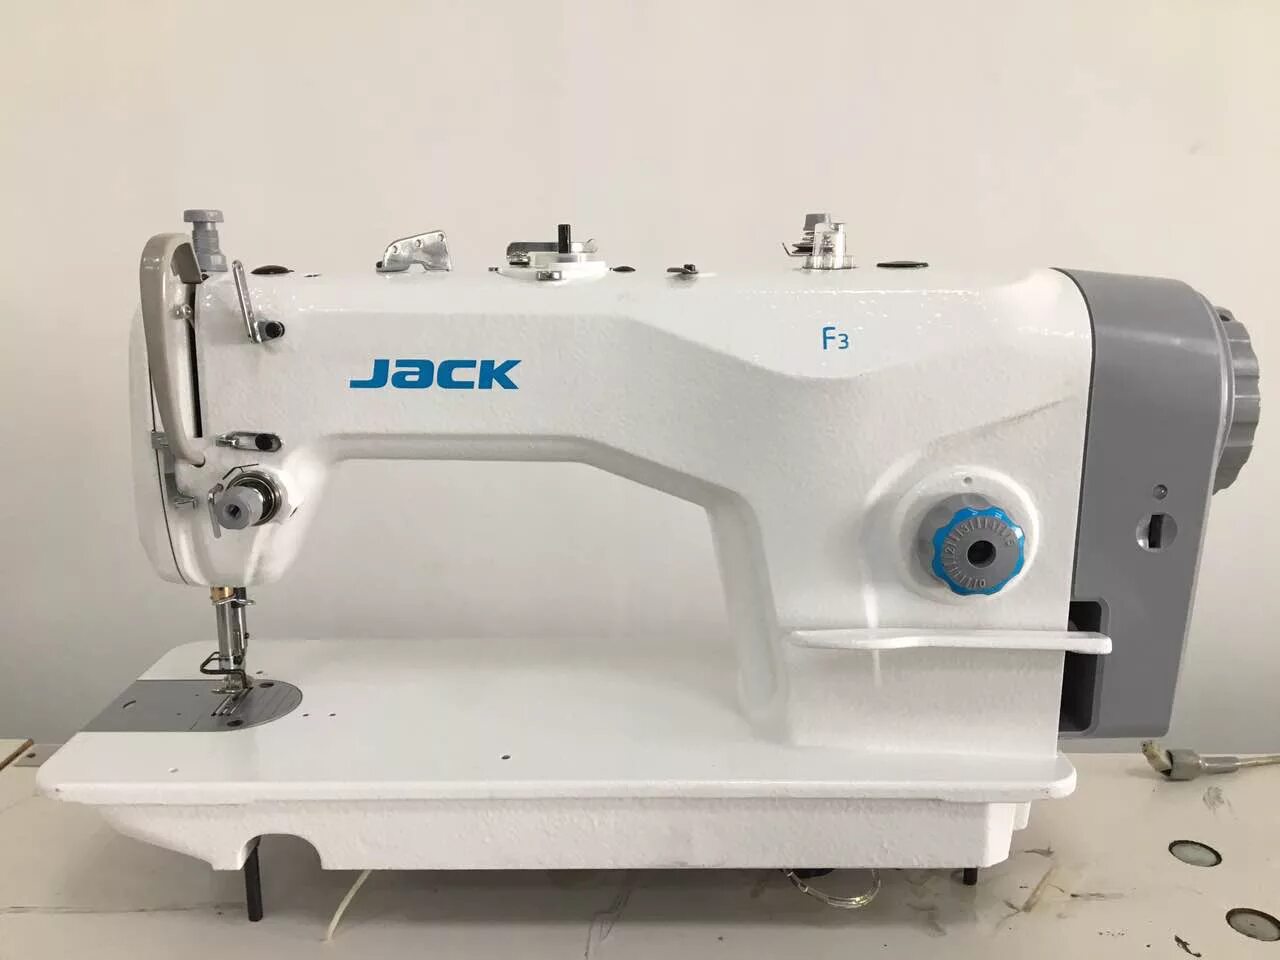 Швейная машинка джак. Jack f3 швейная машина. Jack JK f3. Промышленная швейная машина Jack JK-f4. Швейная машинка Промышленная Jack f3.